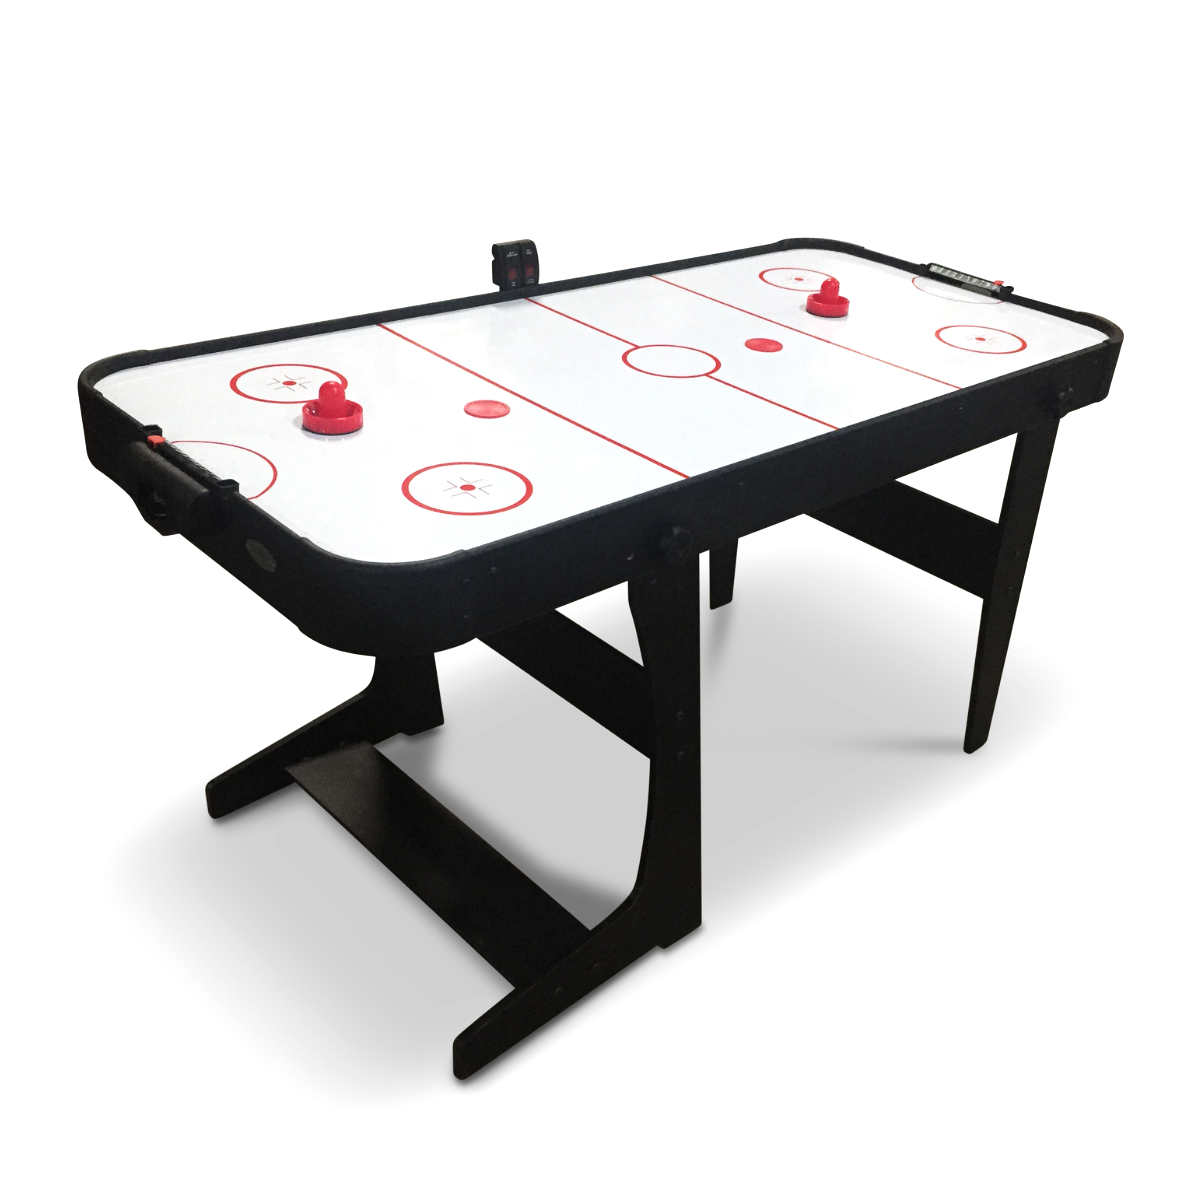 The Eagle 4 6" Air Hockey Table